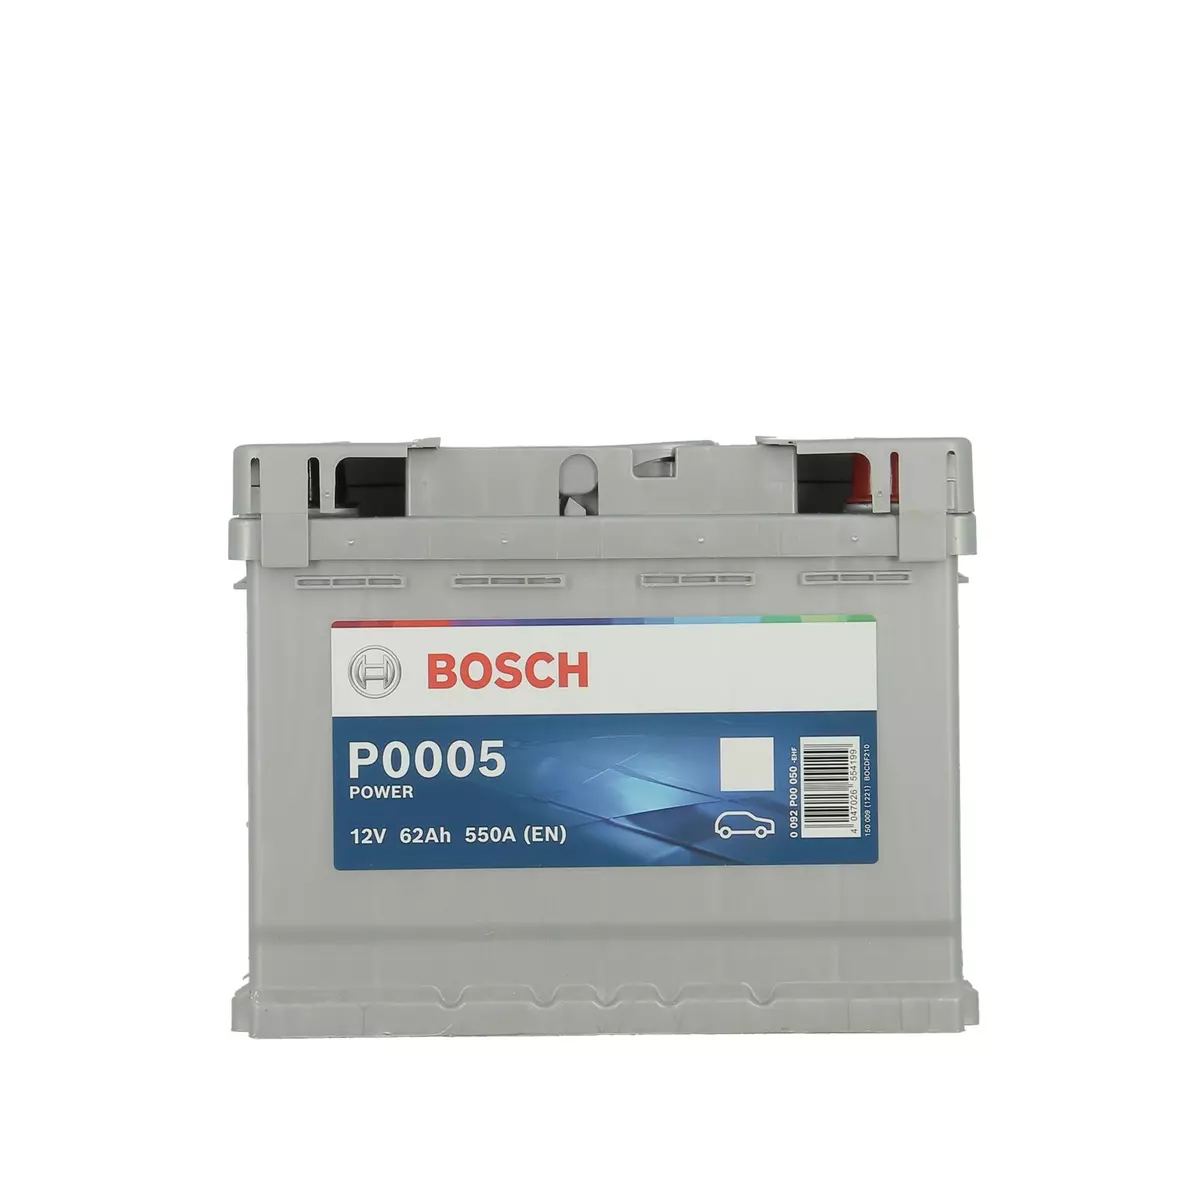 BOSCH Batterie 62AH 550A P0005